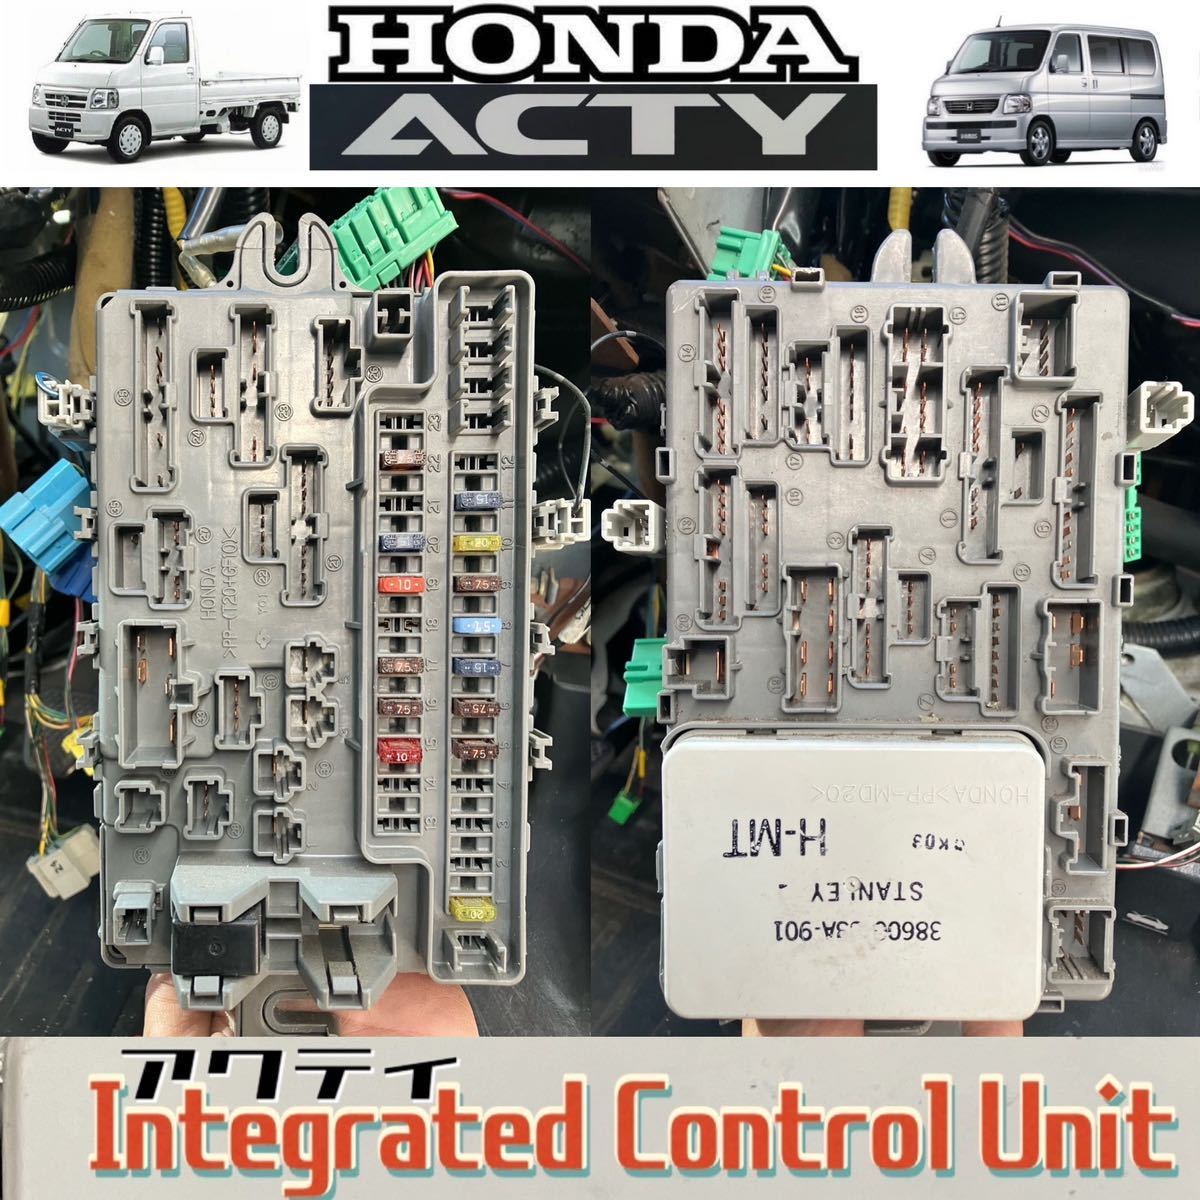 HONDA ACTY TRUCK アクティ トラック[ HA6 ]5MT用 iCU インテグレーテッドコントロールユニット ヒューズボックス 検索》HA7 HH5 HH6_画像1